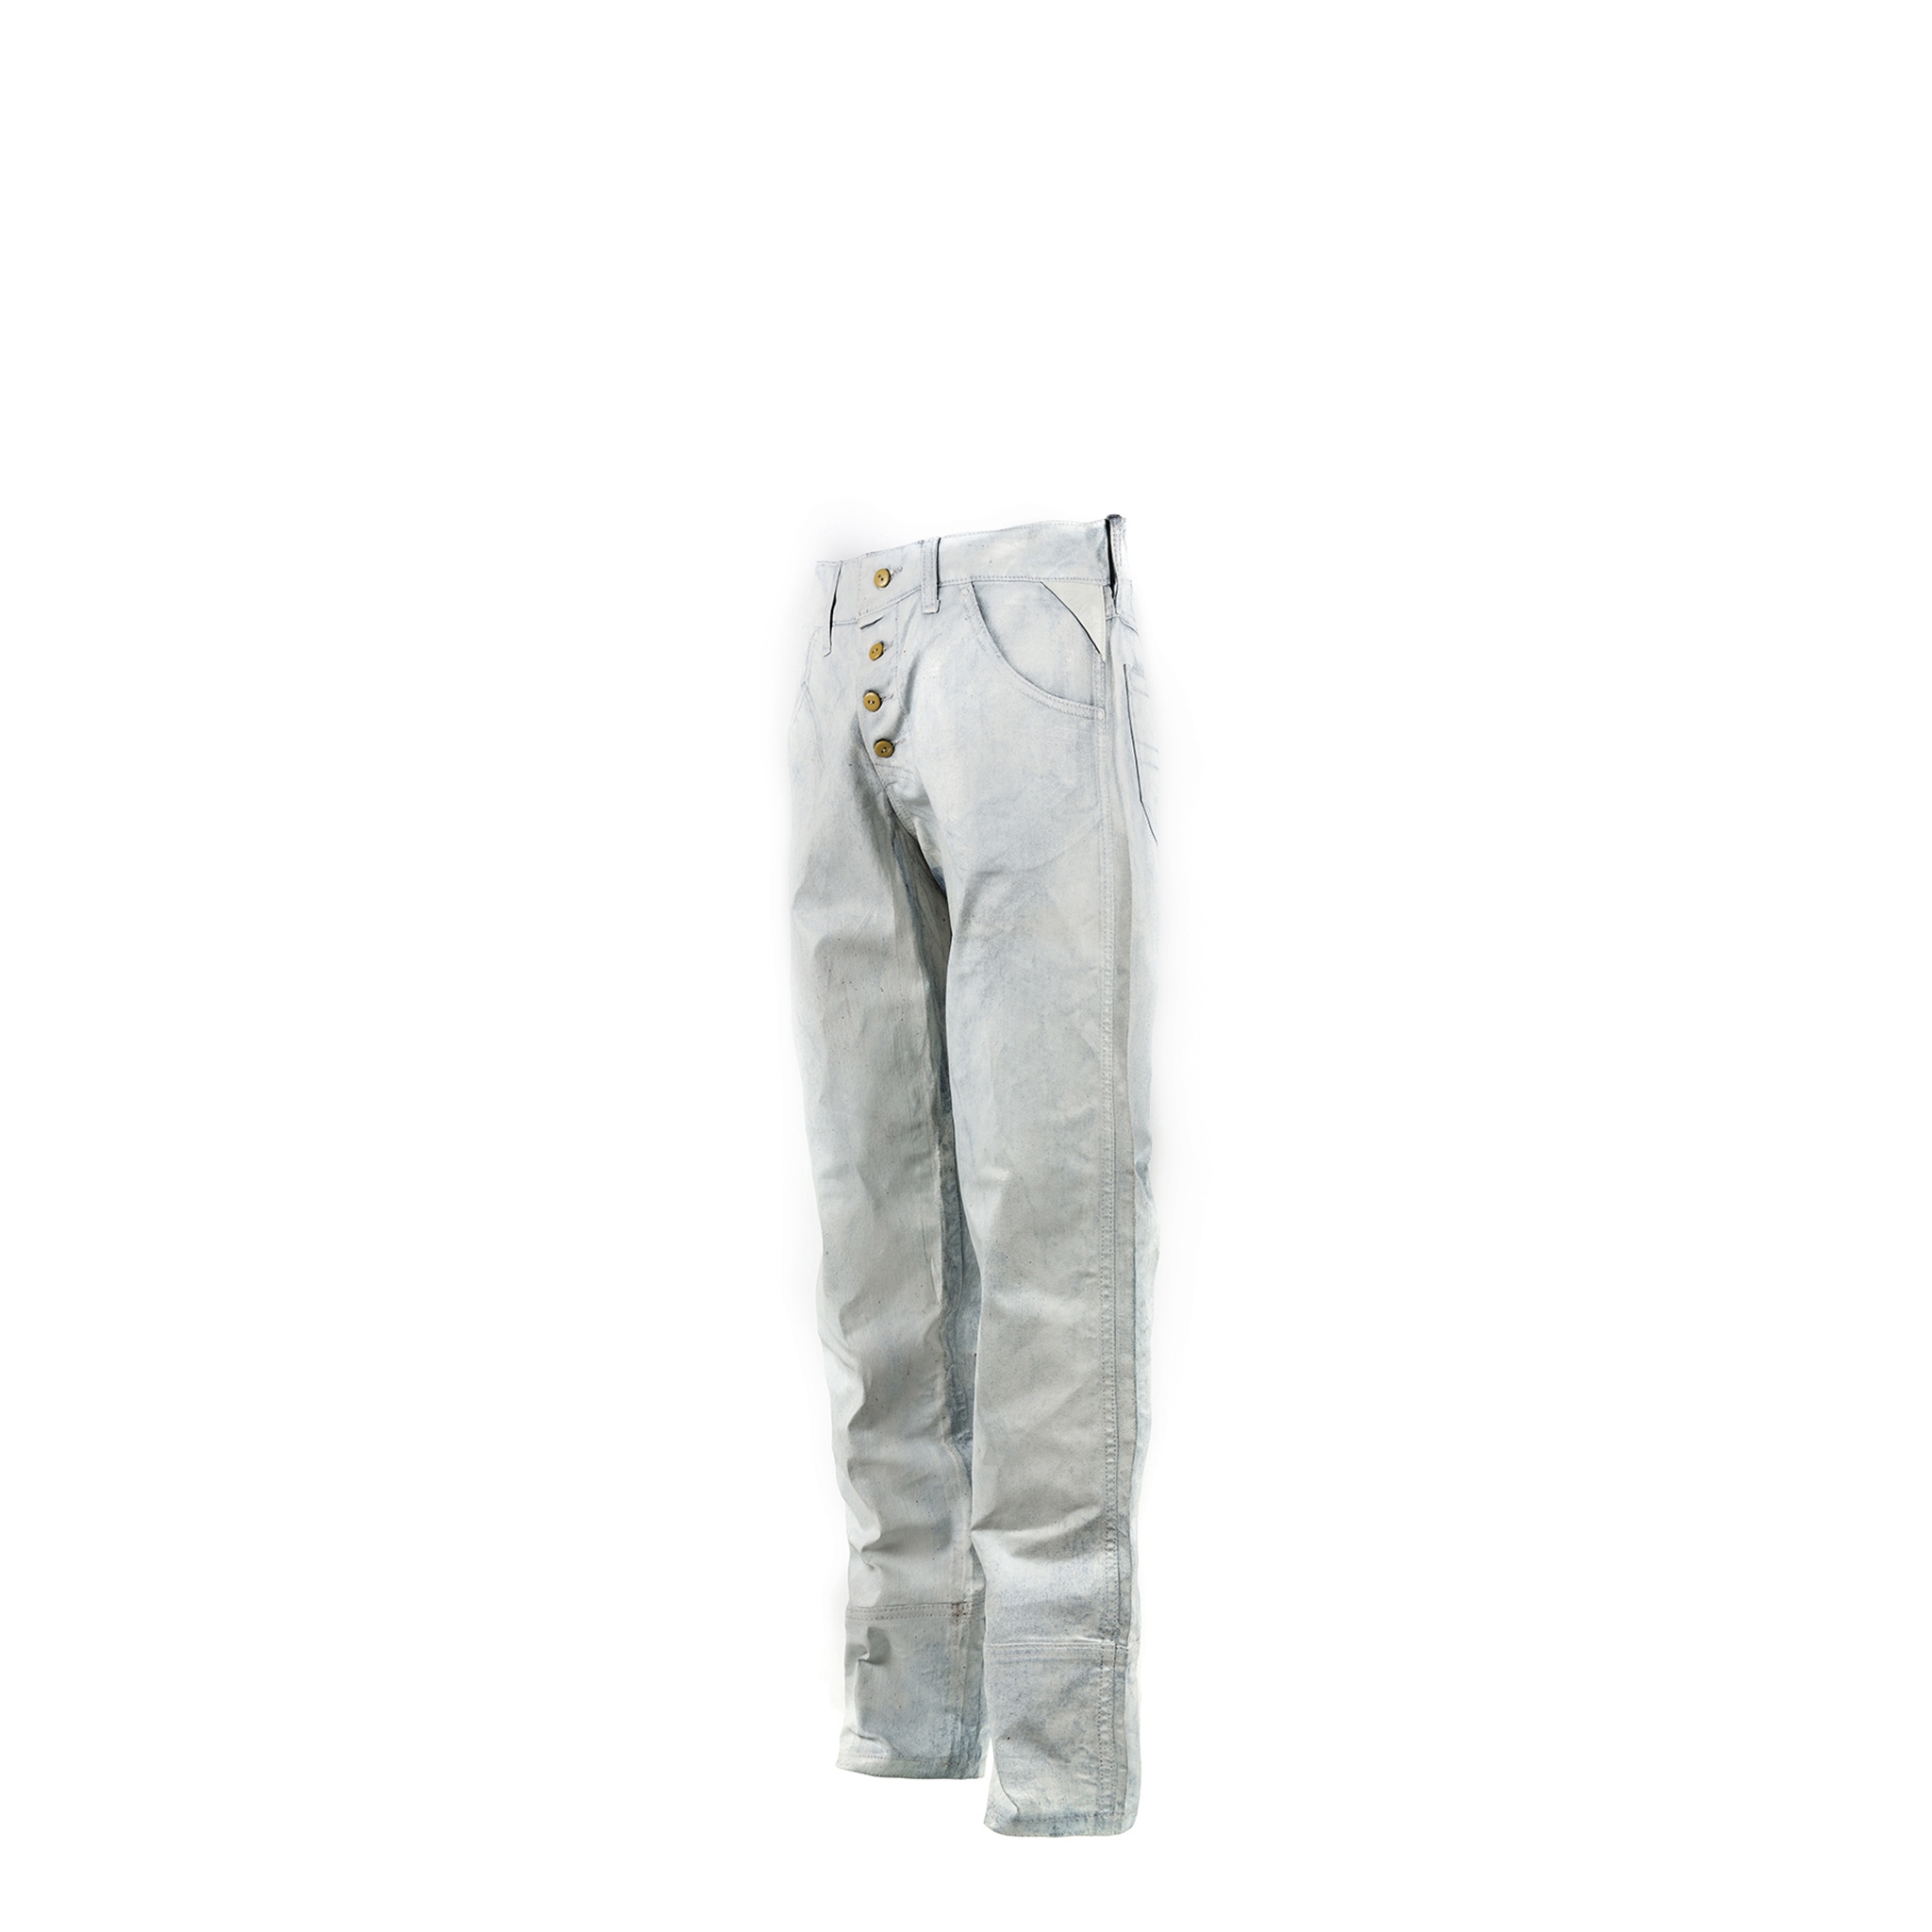 Jeans 2006 A - Finition nappée - Couleur blanc